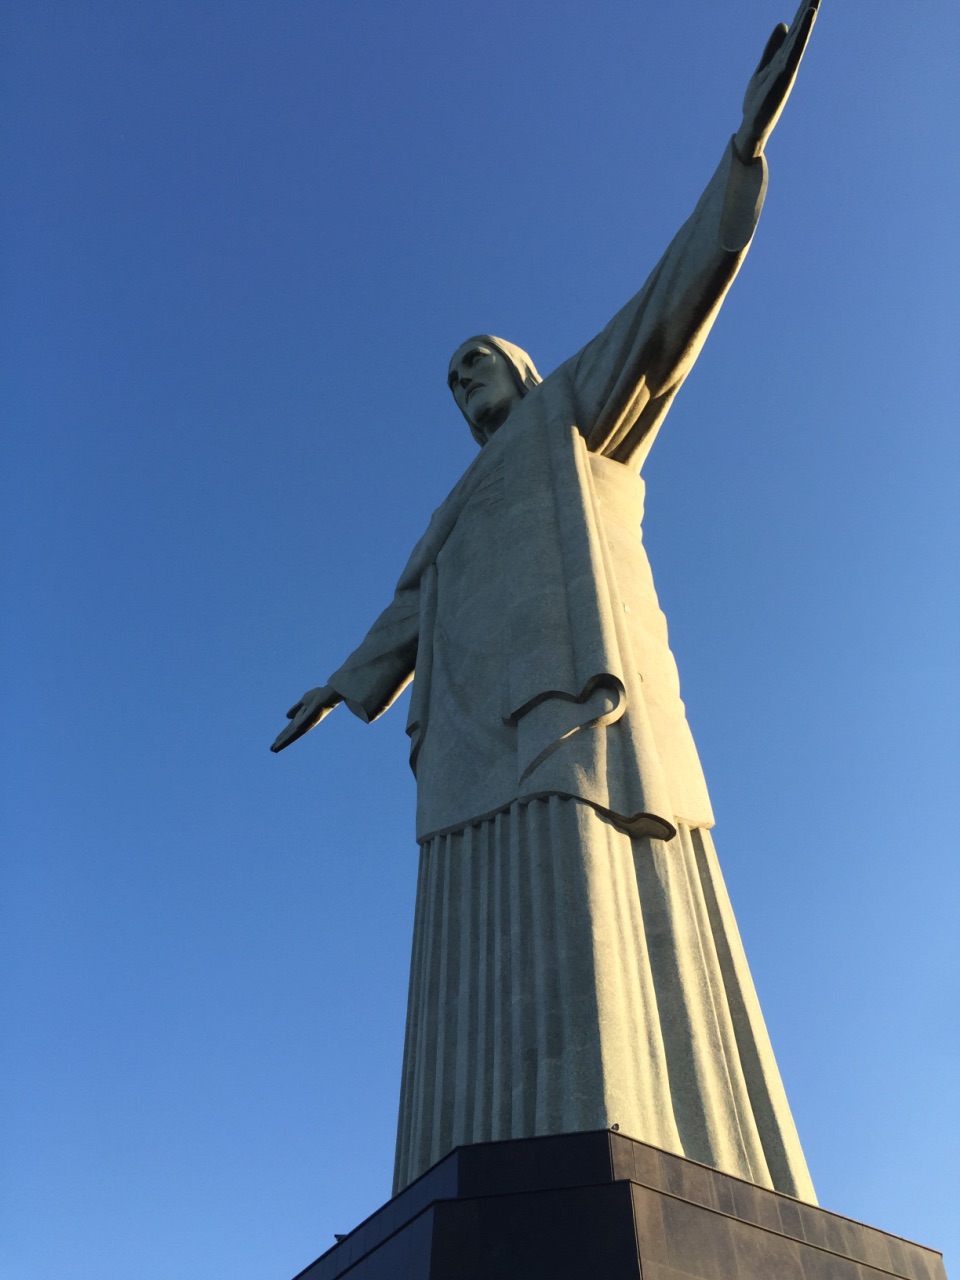 说到巴西的第一印象就是这里:耶稣像